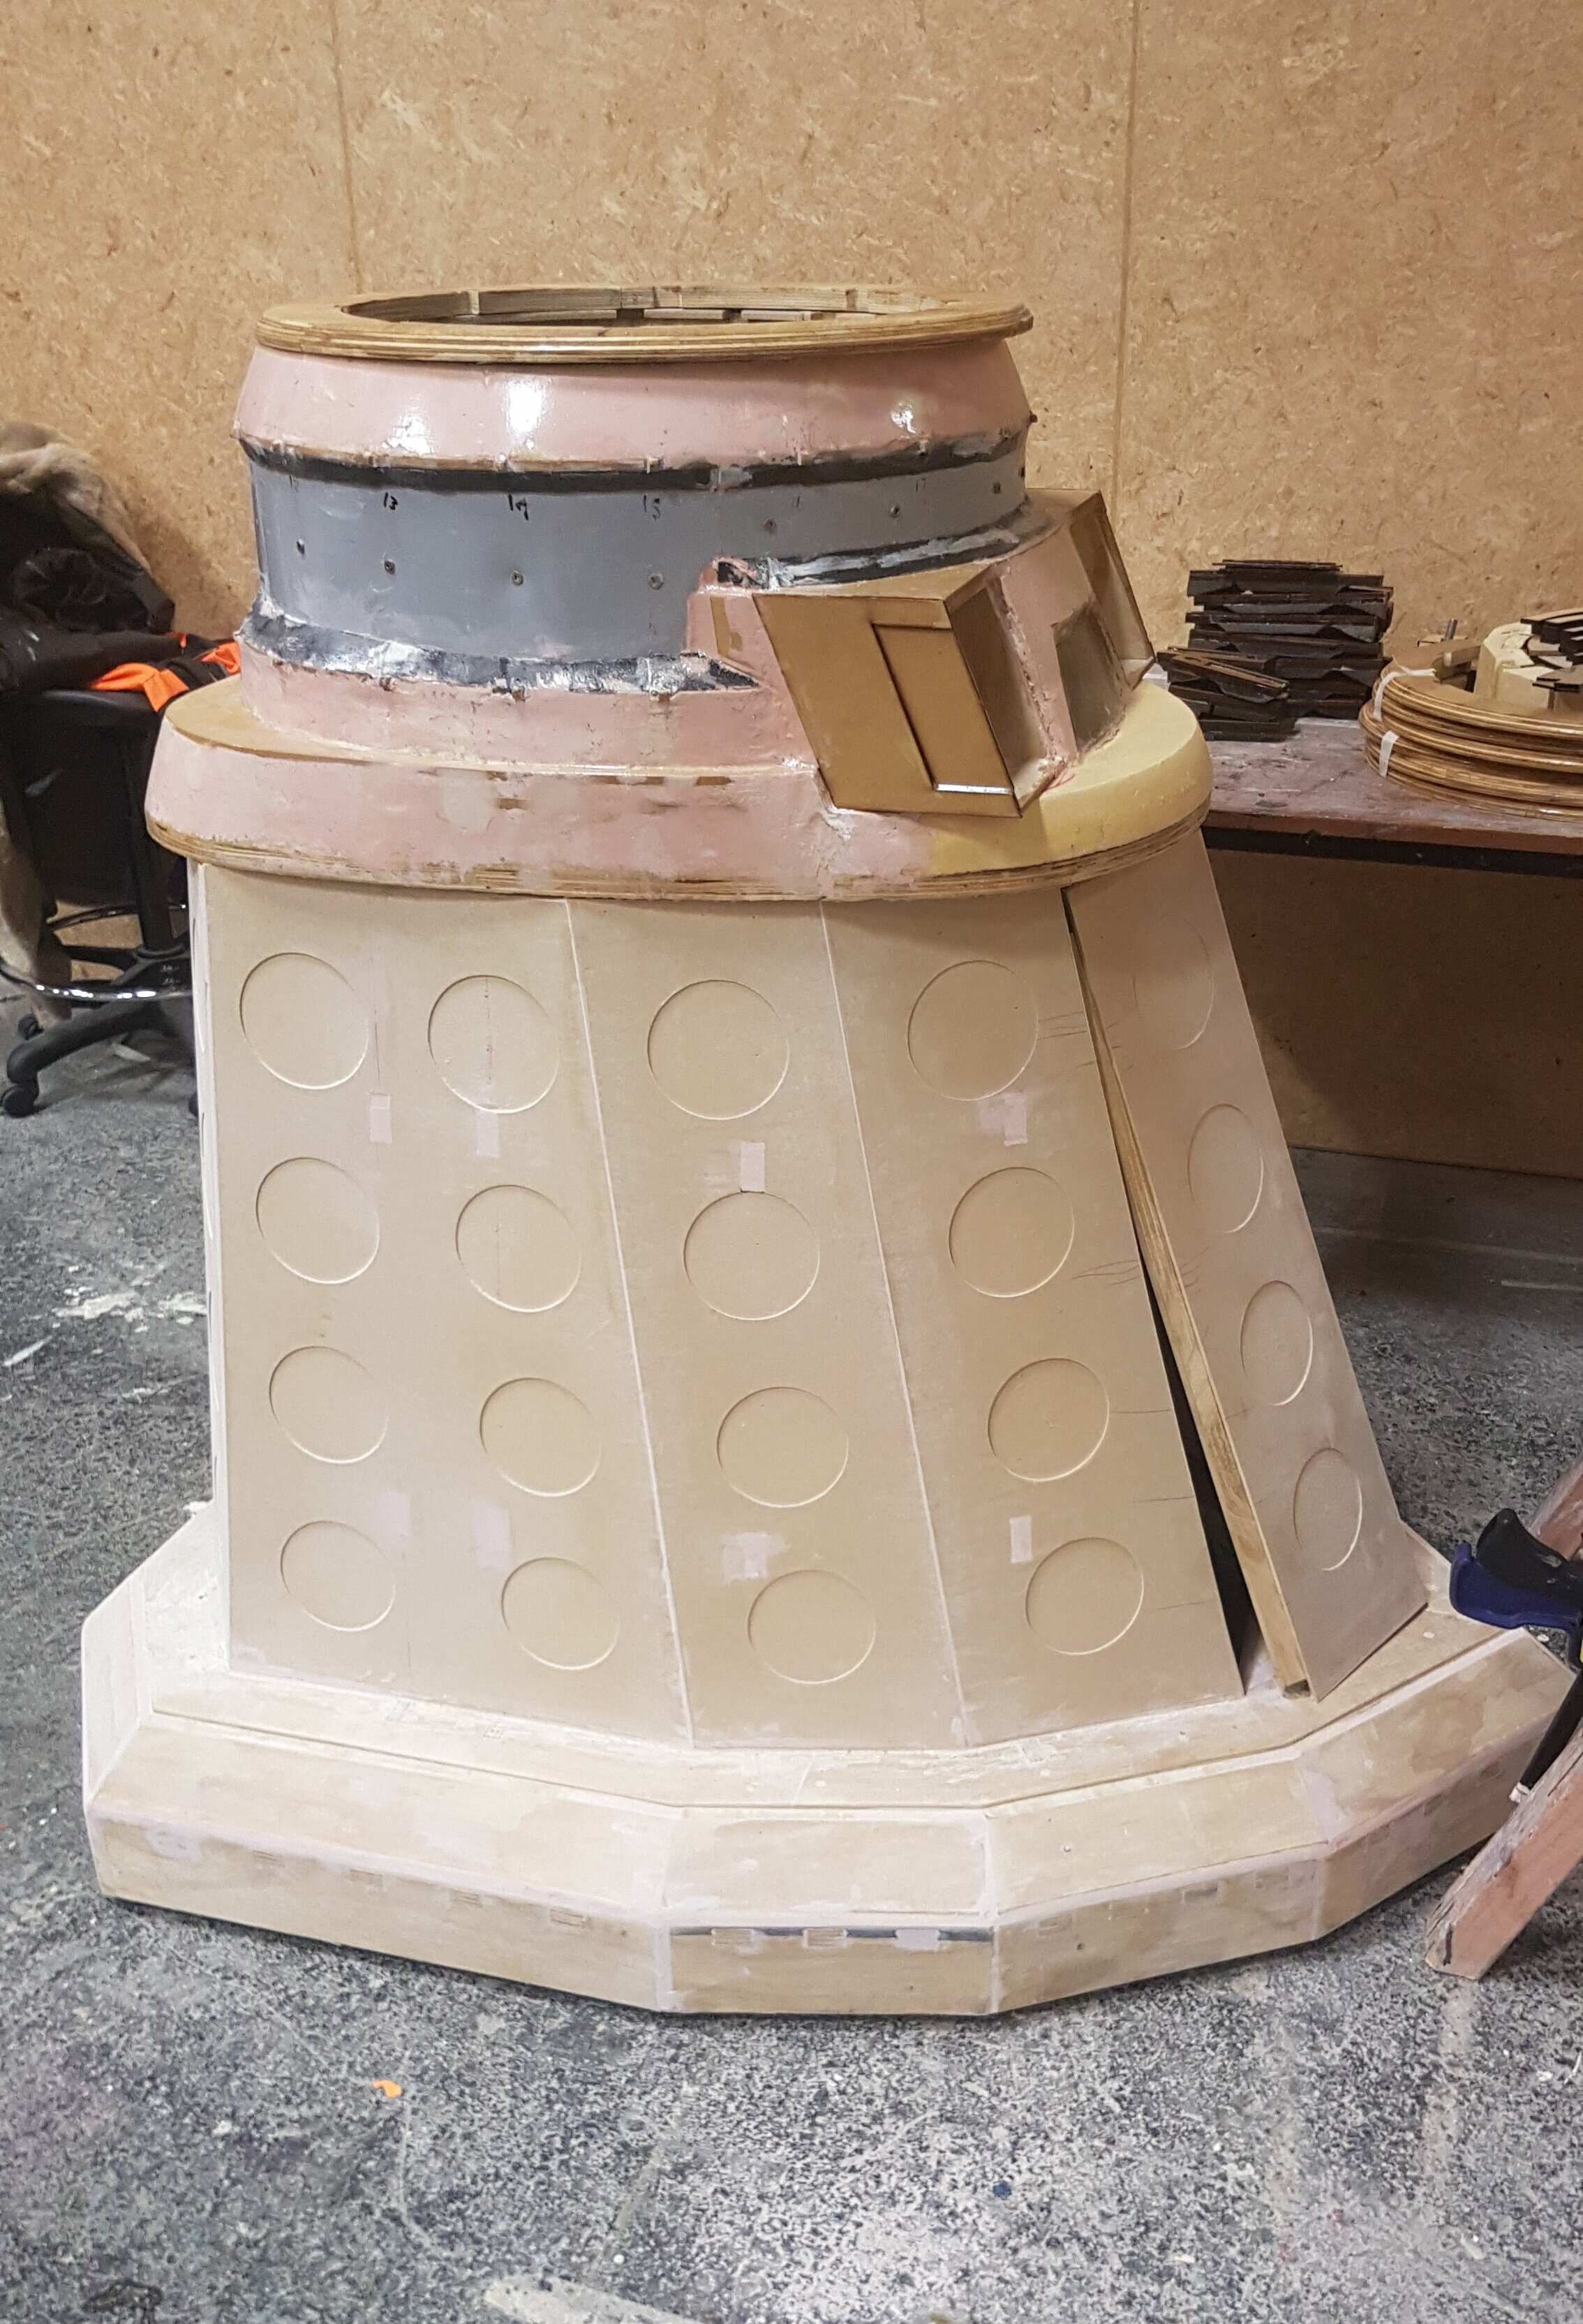 Dalek skirt assembled